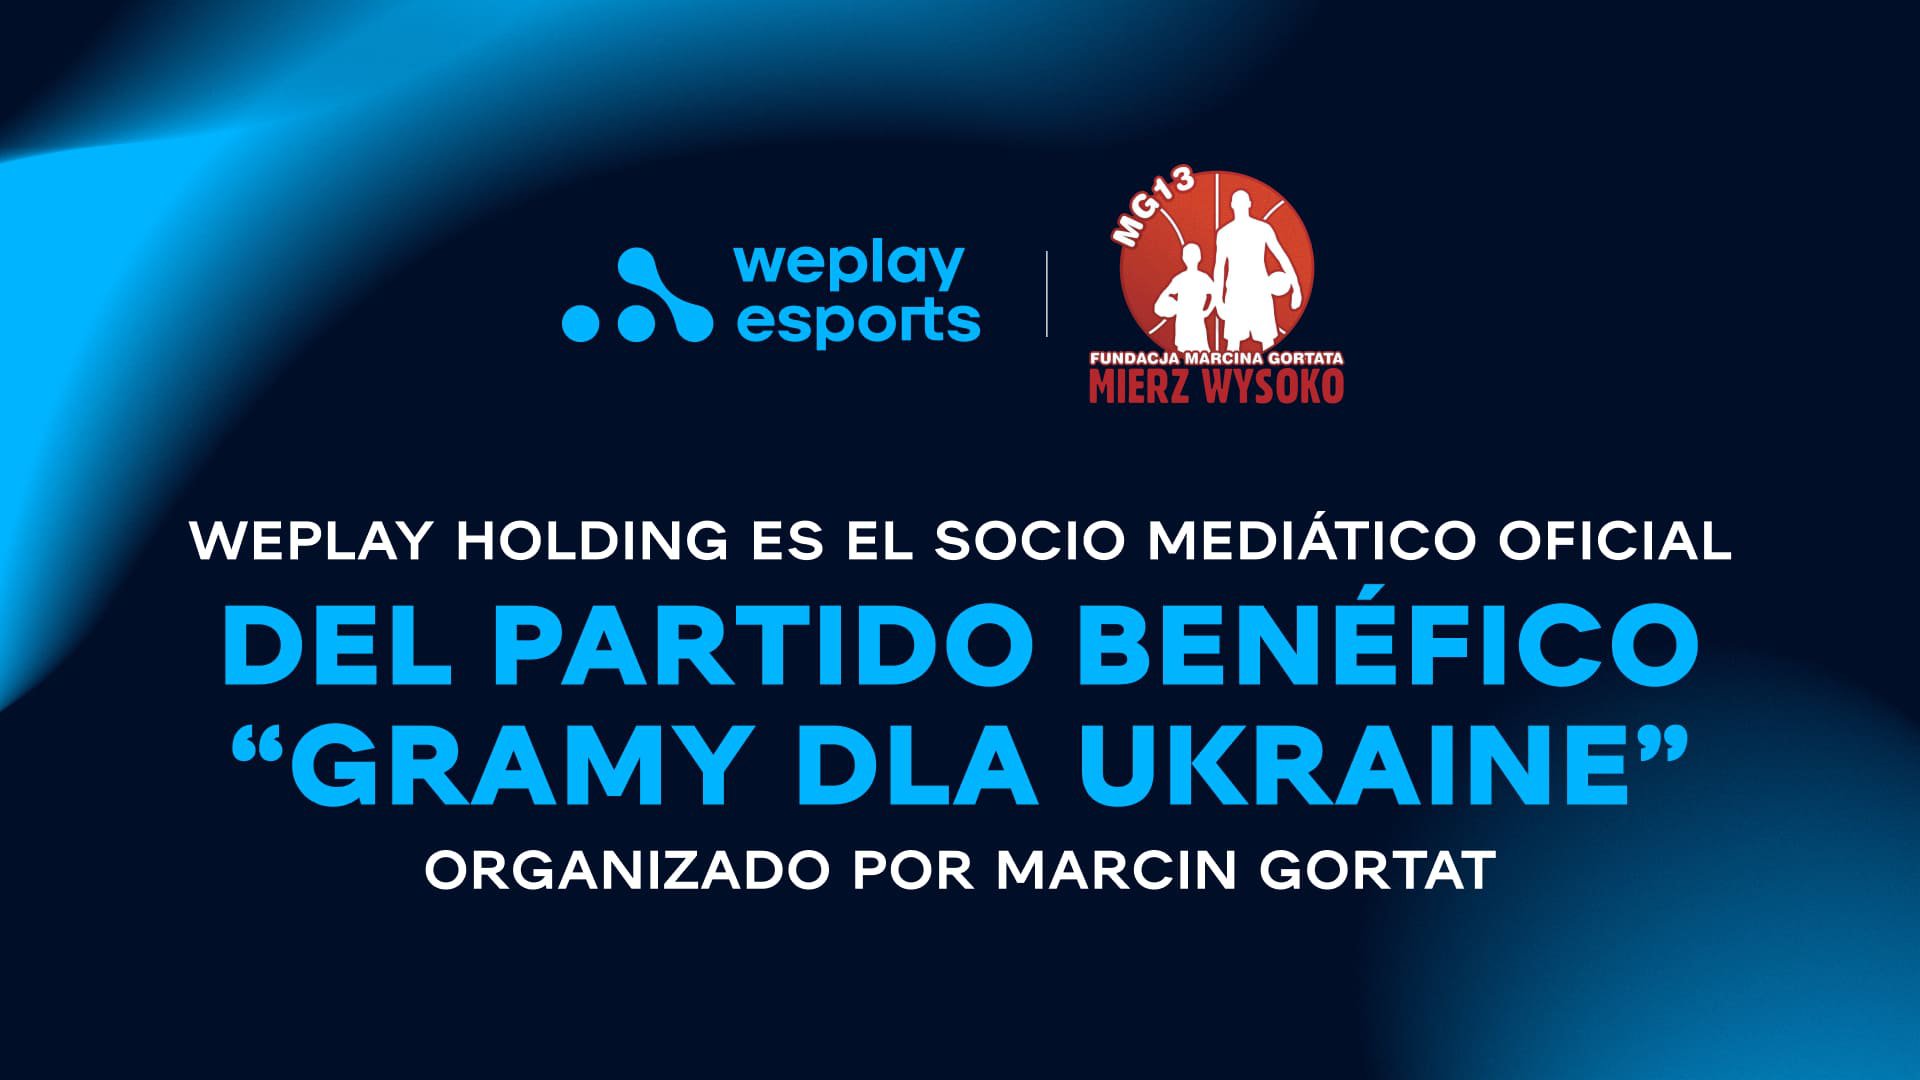 WePlay Holding es el socio mediático oficial del partido benéfico “Gramy dla Ukraine” organizado por Marcin Gortat. Imagen: WePlay Holding